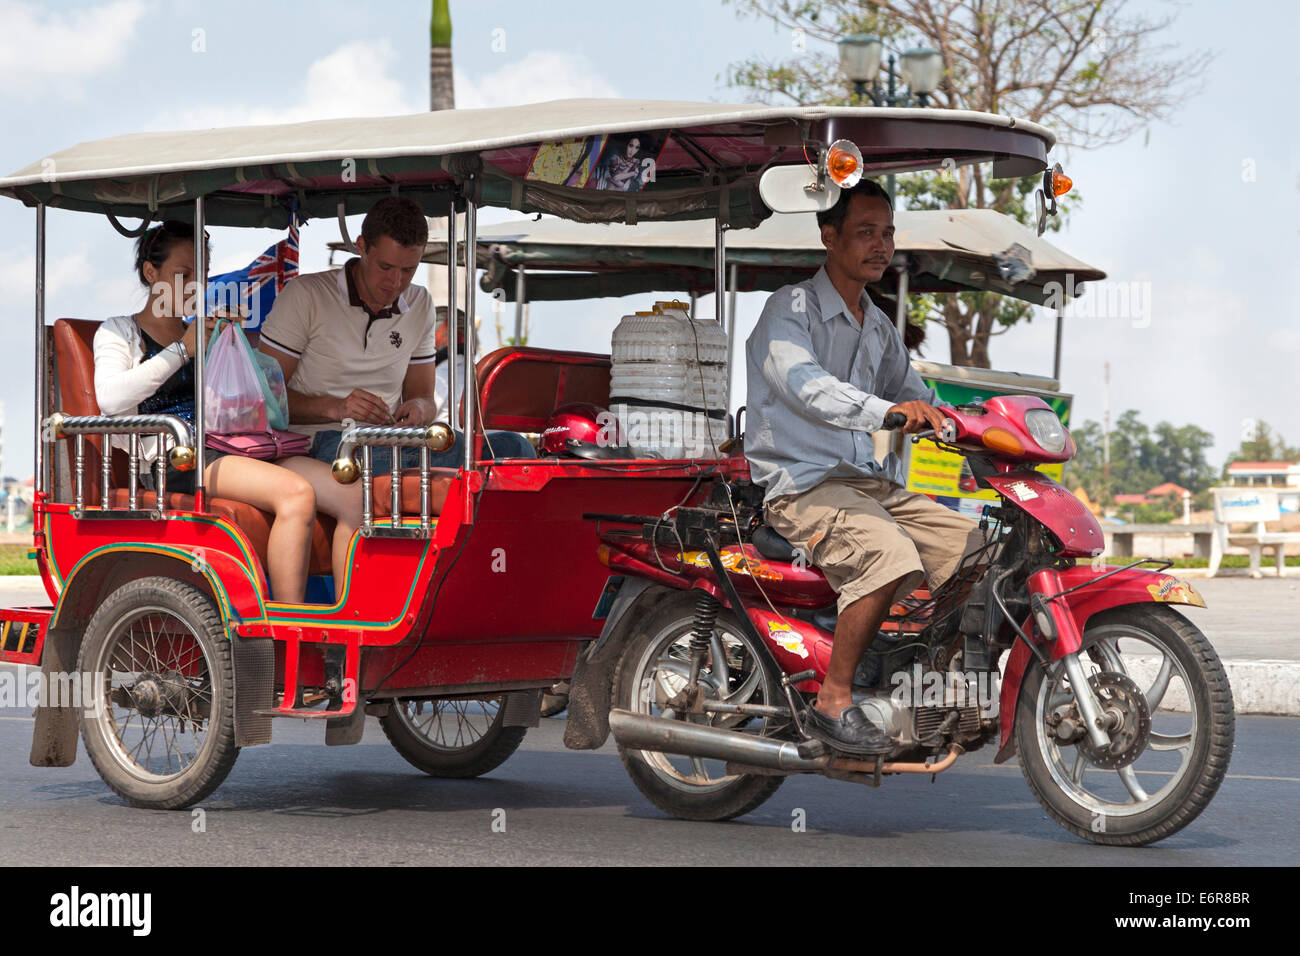 Tuk Tuk with passengers, Phnom Penh, Cambodia Stock Photo